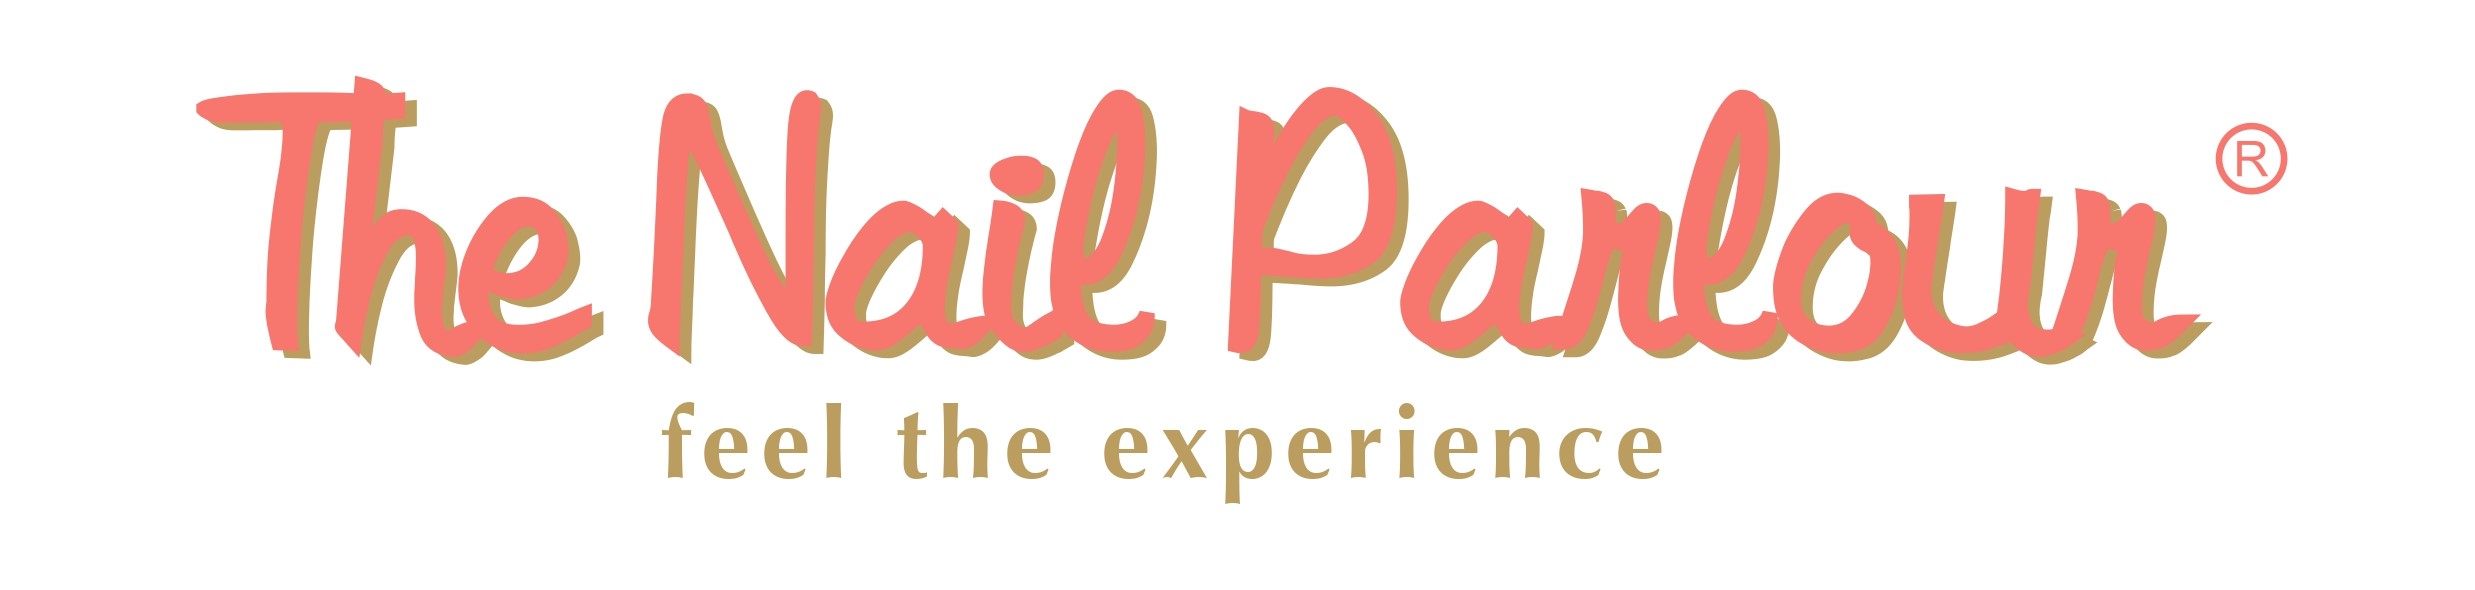 The Nail Parlour – The Nail Parlour